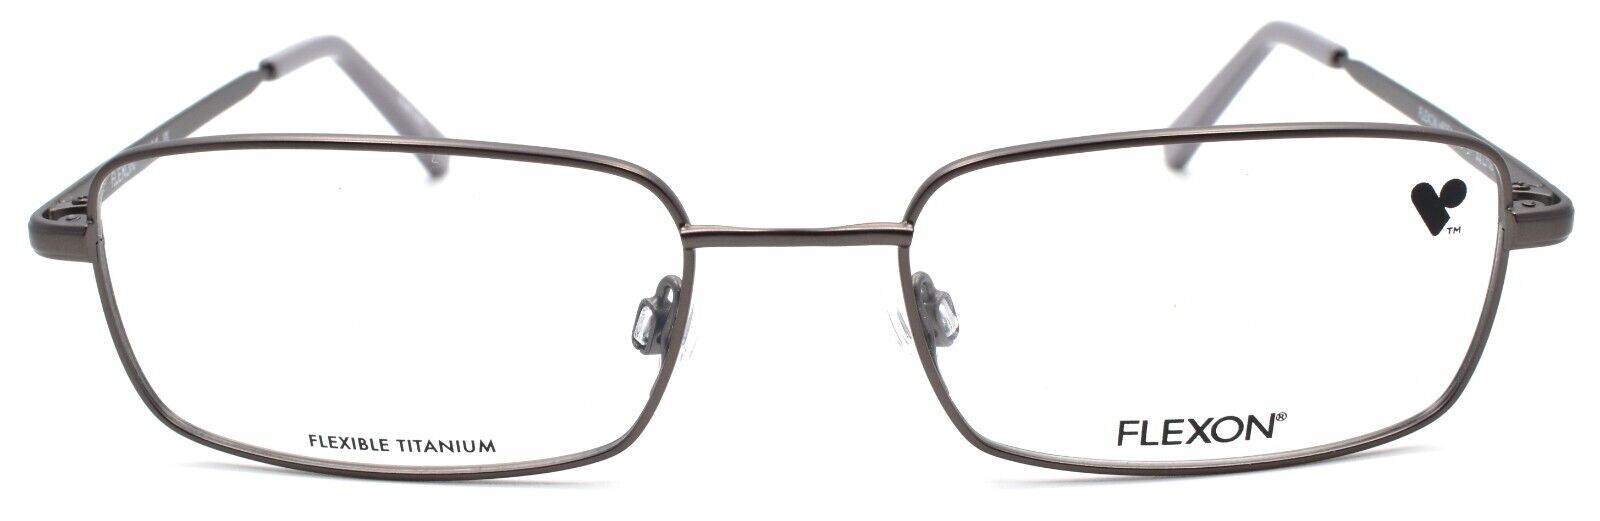 2-Flexon H6051 033 Men's Eyeglasses Frames 53-18-145 Gunmetal Flexible Titanium-886895485555-IKSpecs